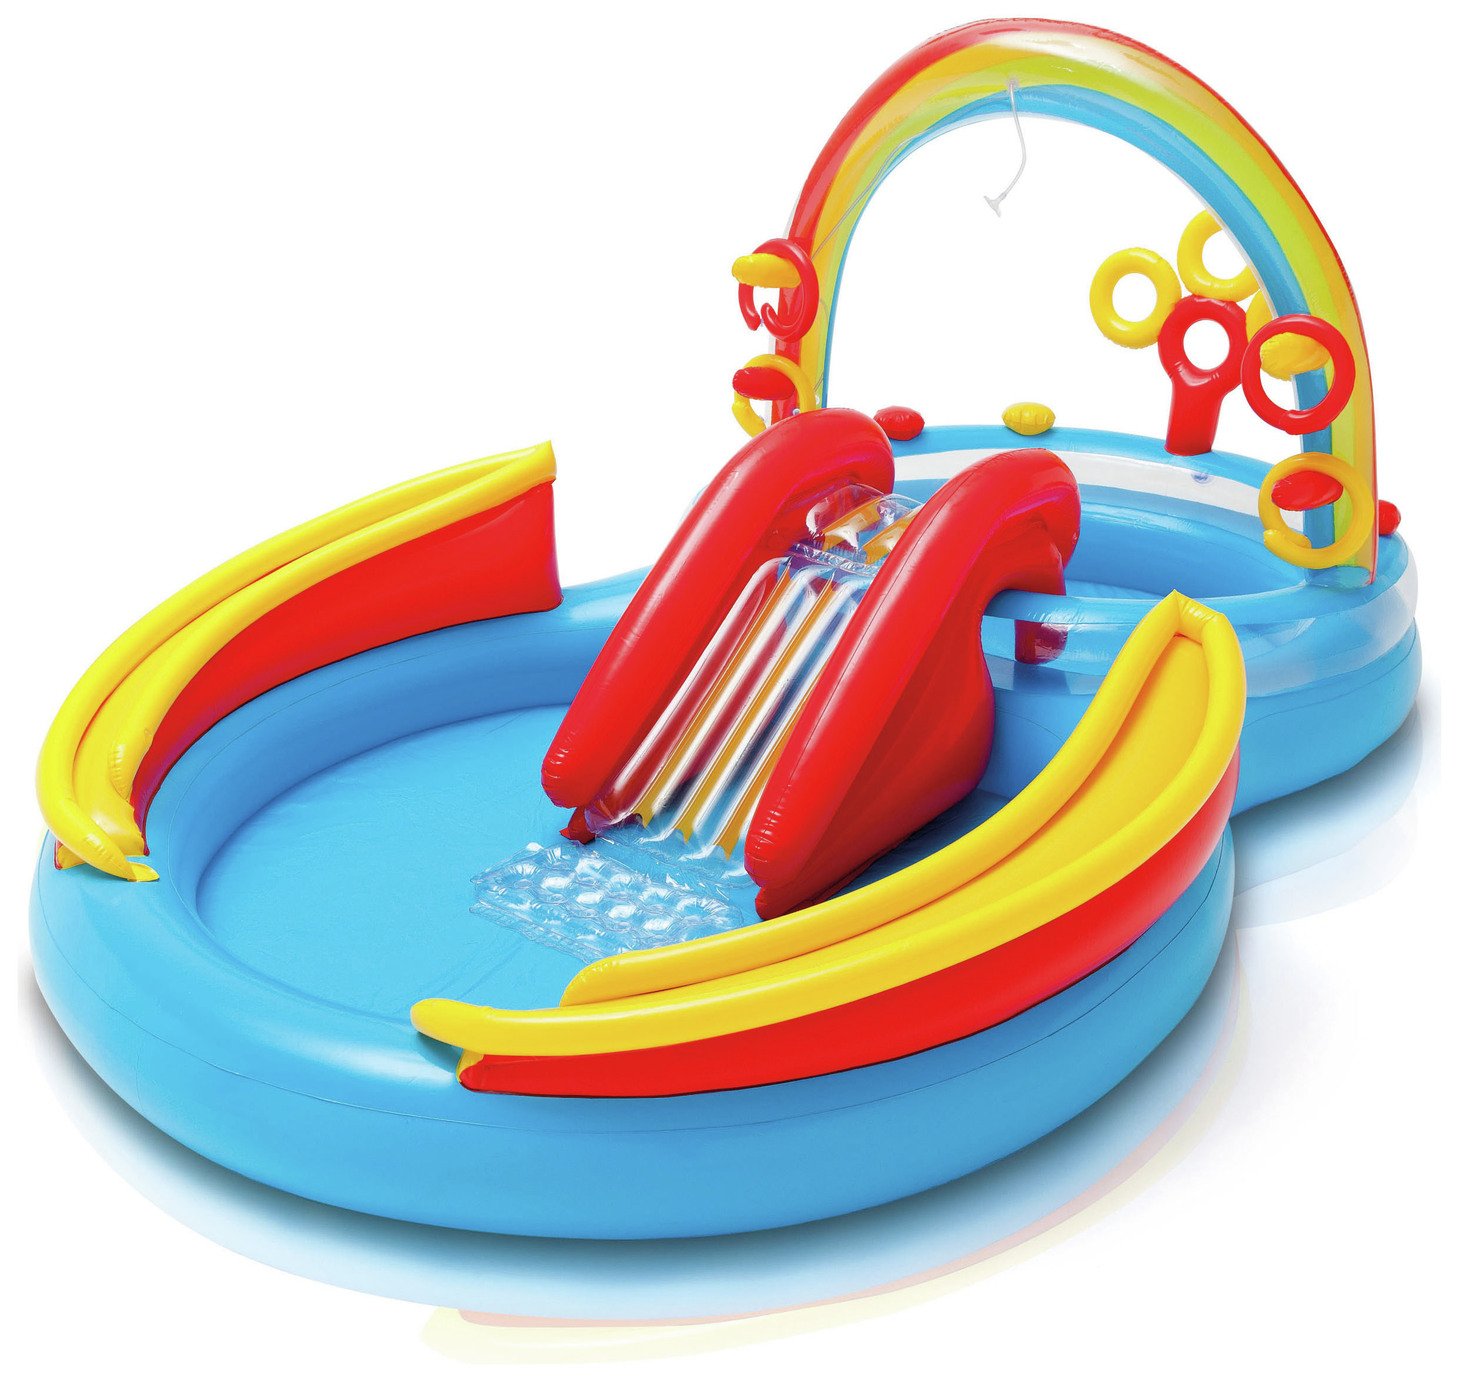 Intex 9.5ft Rainbow Ring Play Kids Paddling Pool - 201L